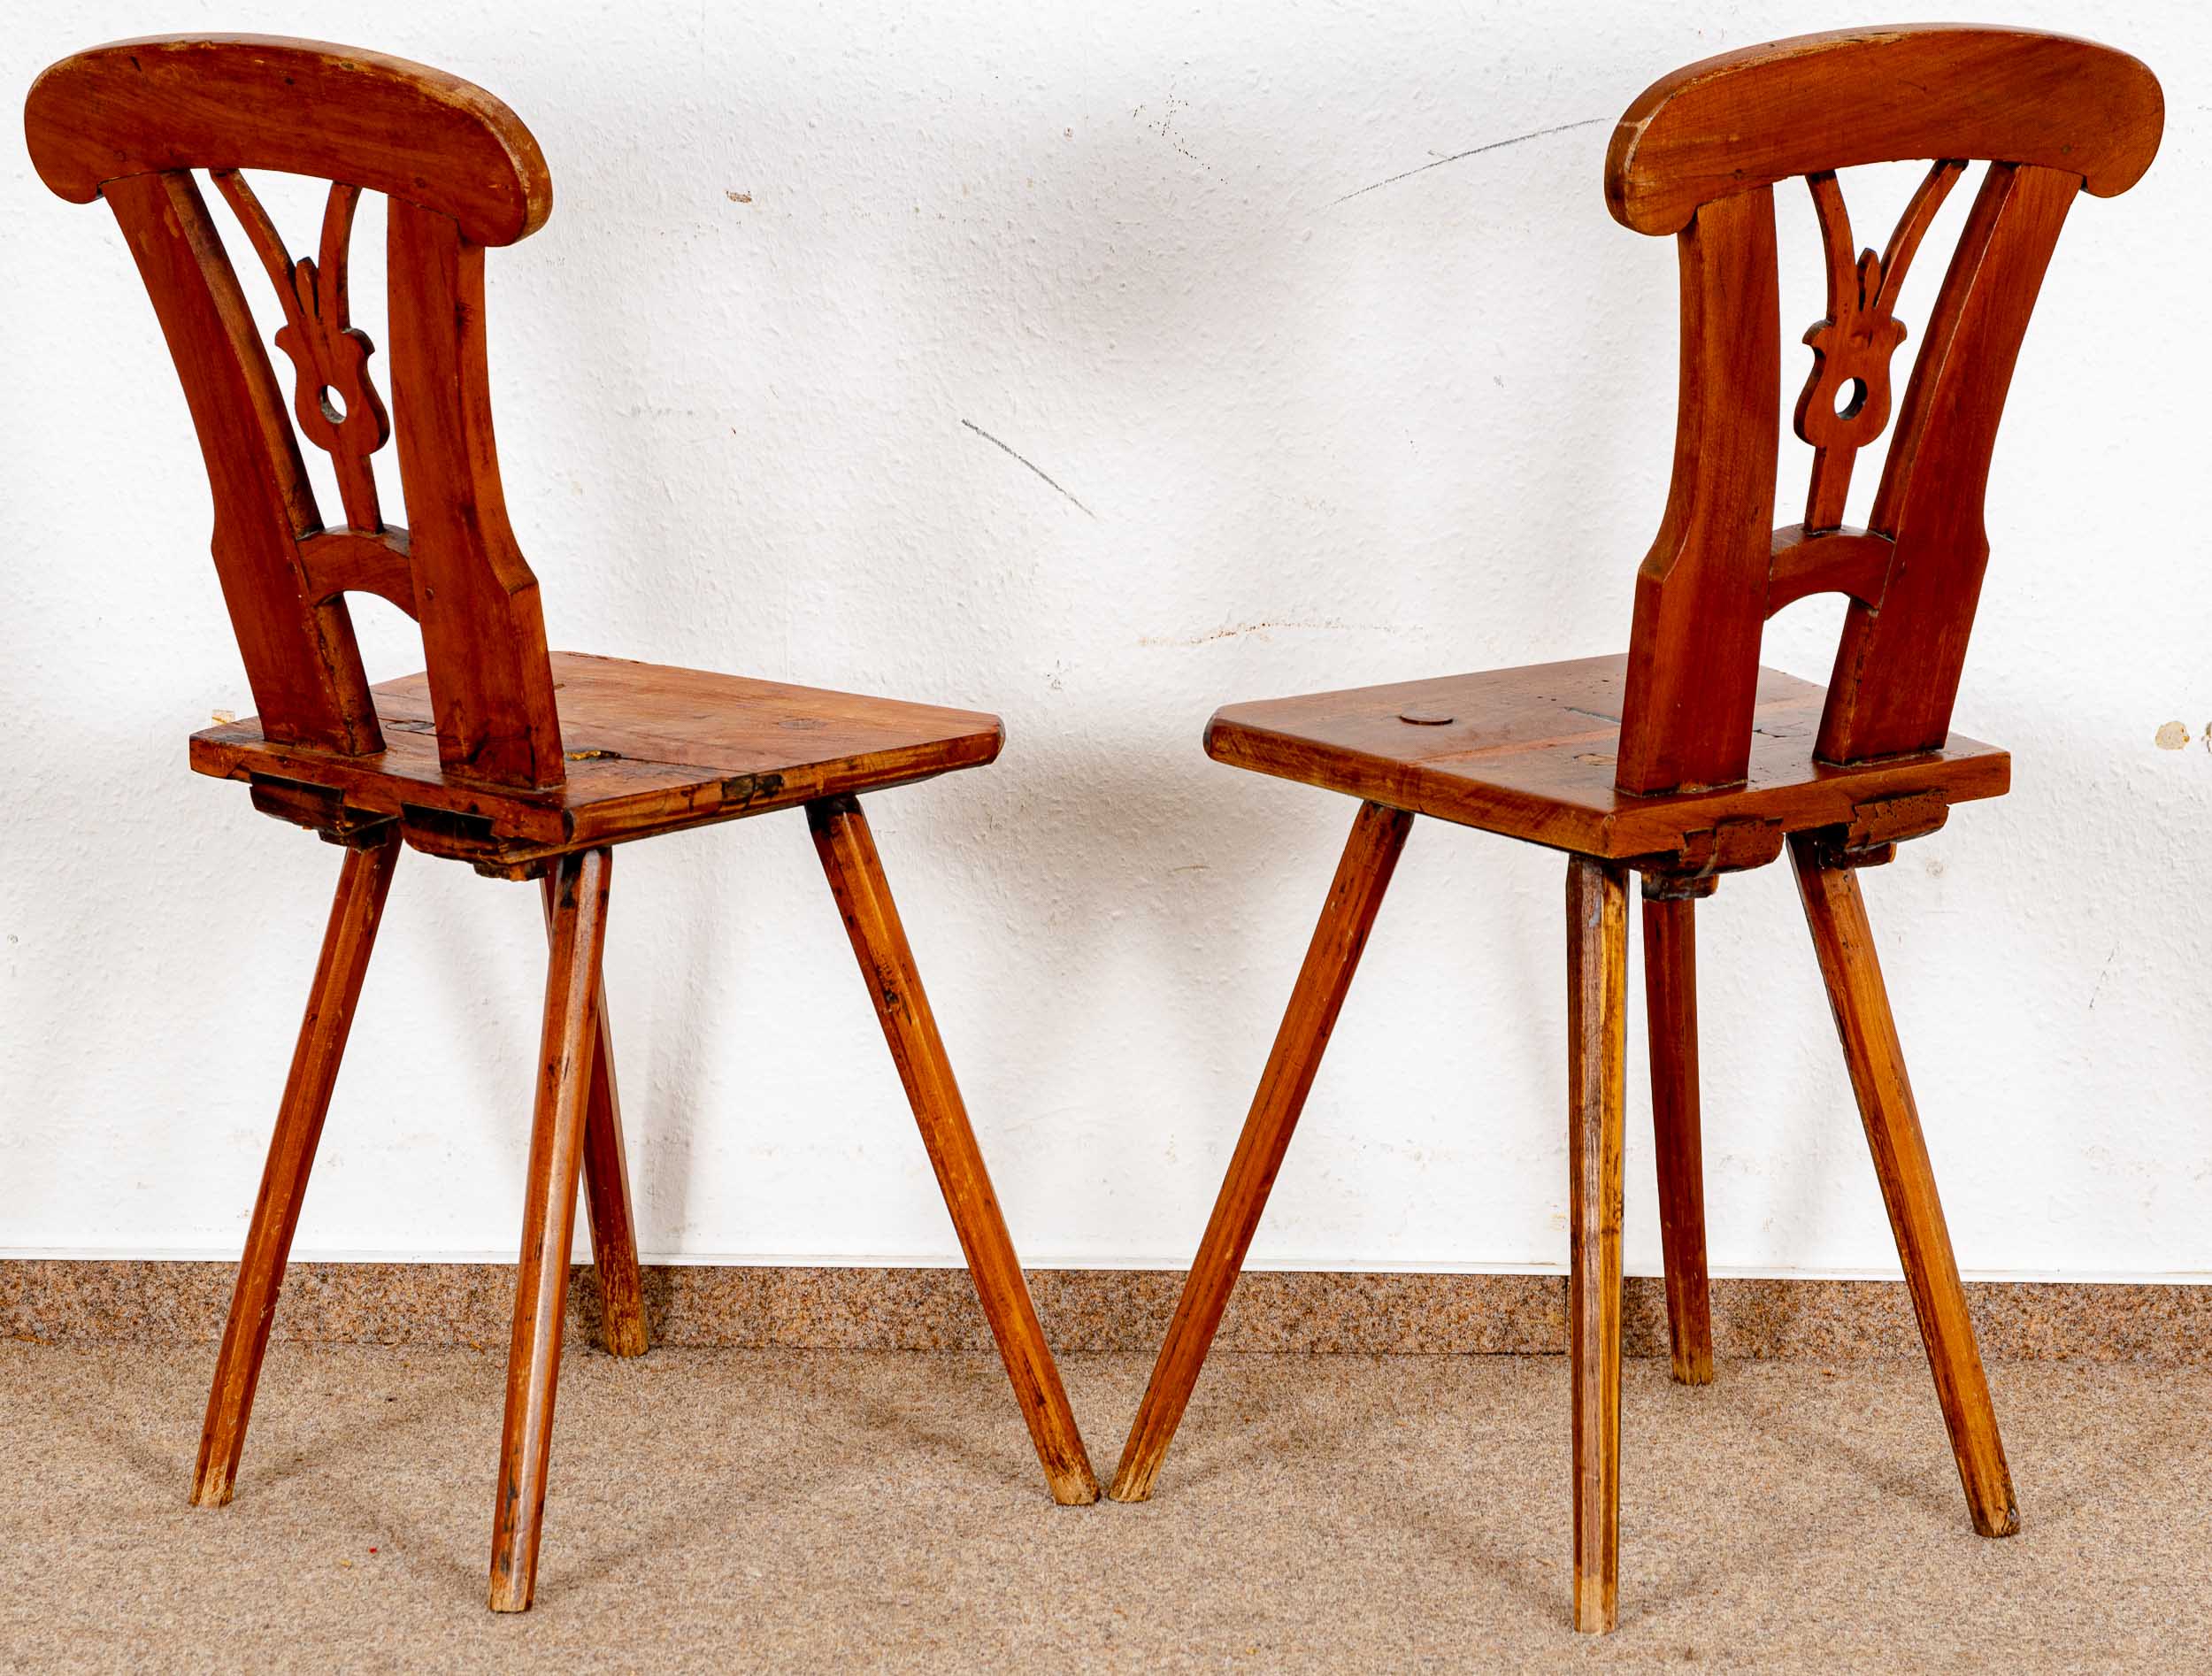 Paar Brettstühle, alpenländisch/süddeutsch, 19. Jhdt., kirschbaumfarbene Harthölzer; ältere Überarb - Image 3 of 4